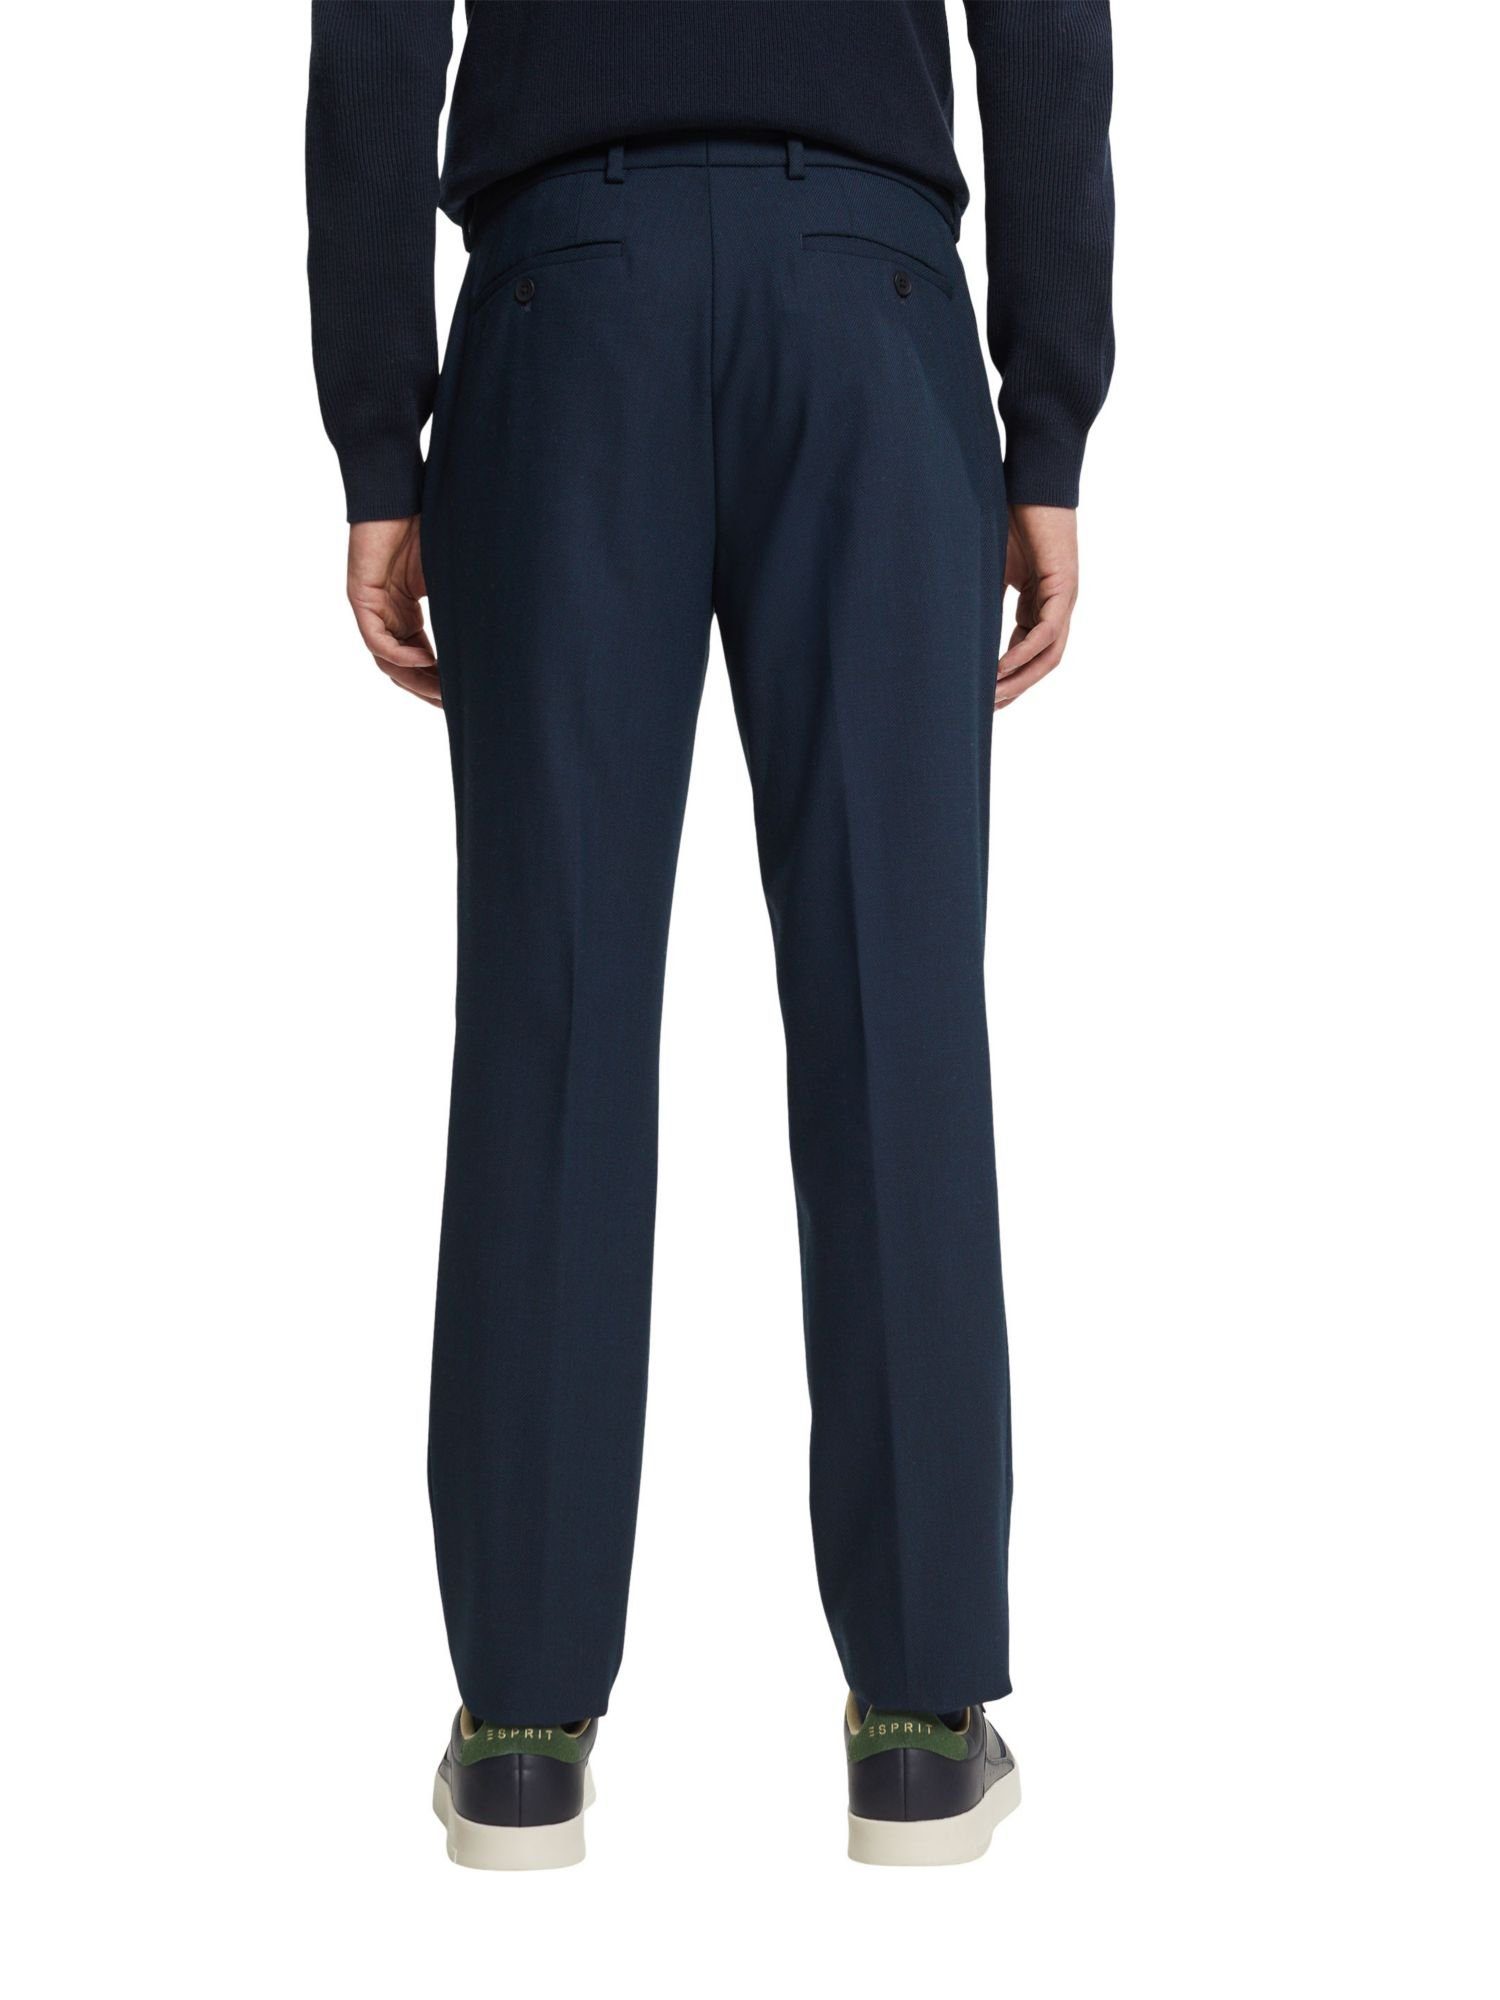 Esprit Collection Anzughose Mix Match: Birdseye-Muster & NAVY Anzughose mit